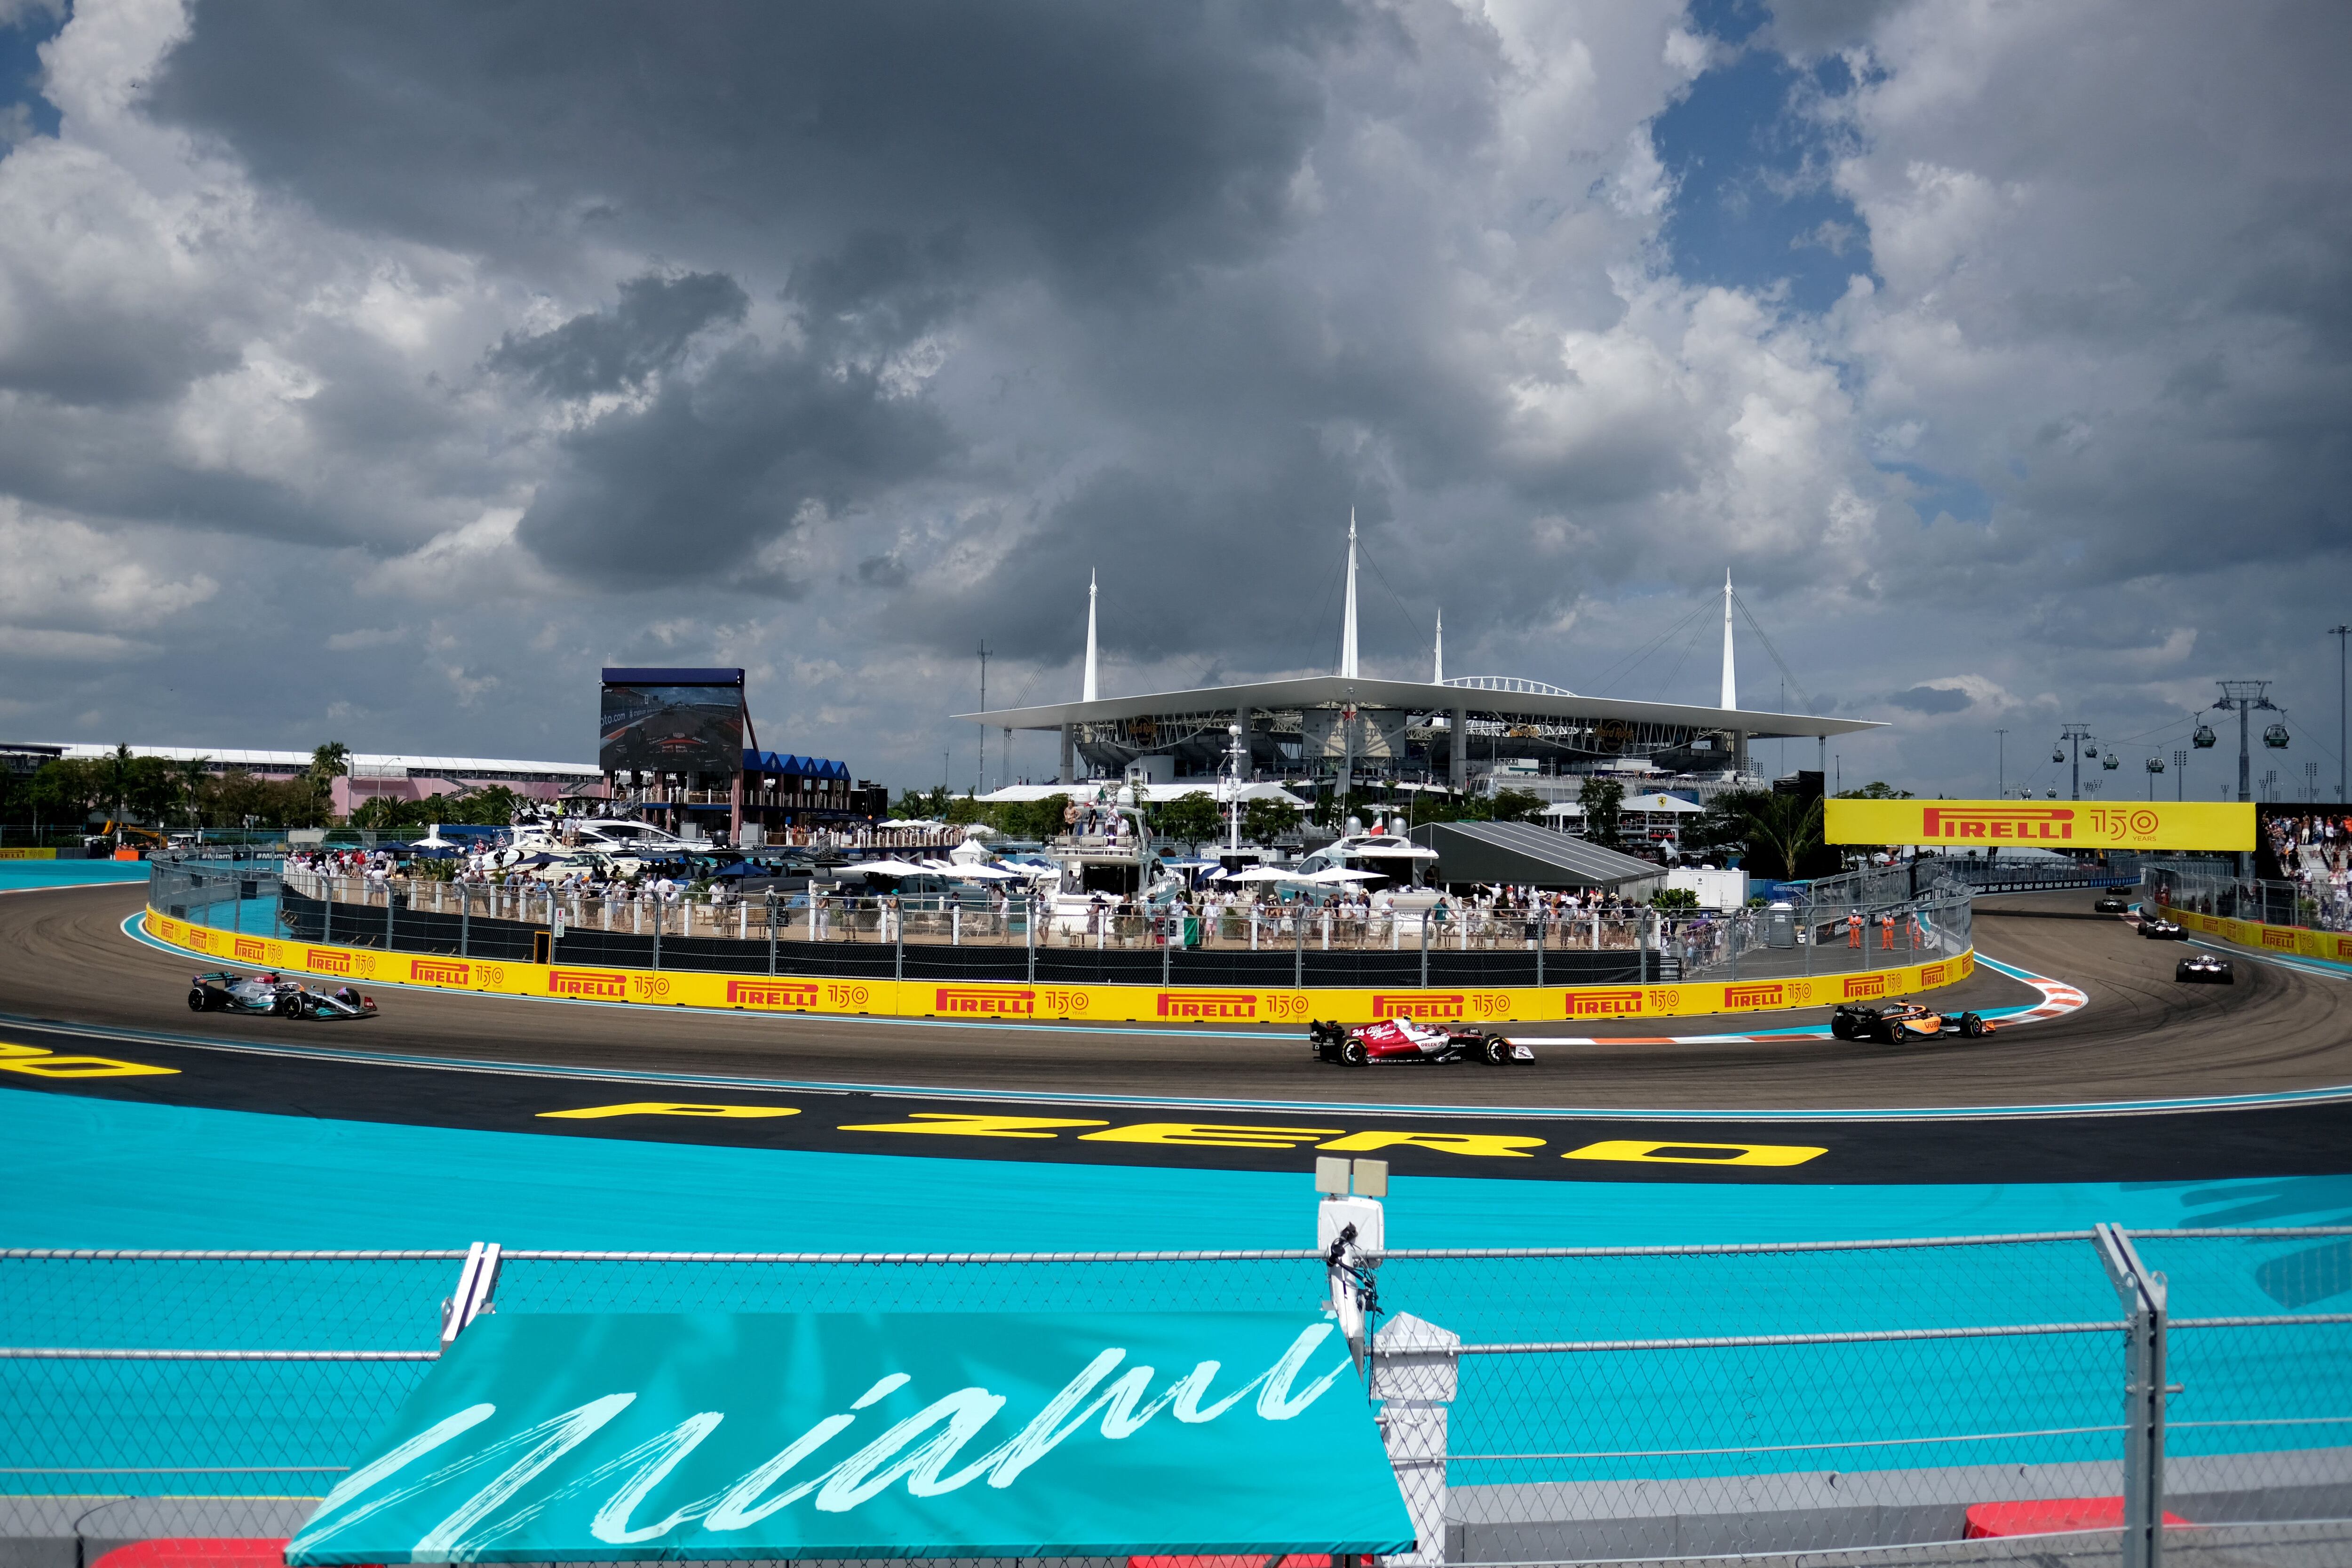 Durante el evento de F1, Miami ofrece una experiencia completa con una variedad de opciones gastronómicas, hoteles de lujo frente al mar y un ambiente vibrante en cada rincón de la ciudad. REUTERS/Ricardo Arduengo